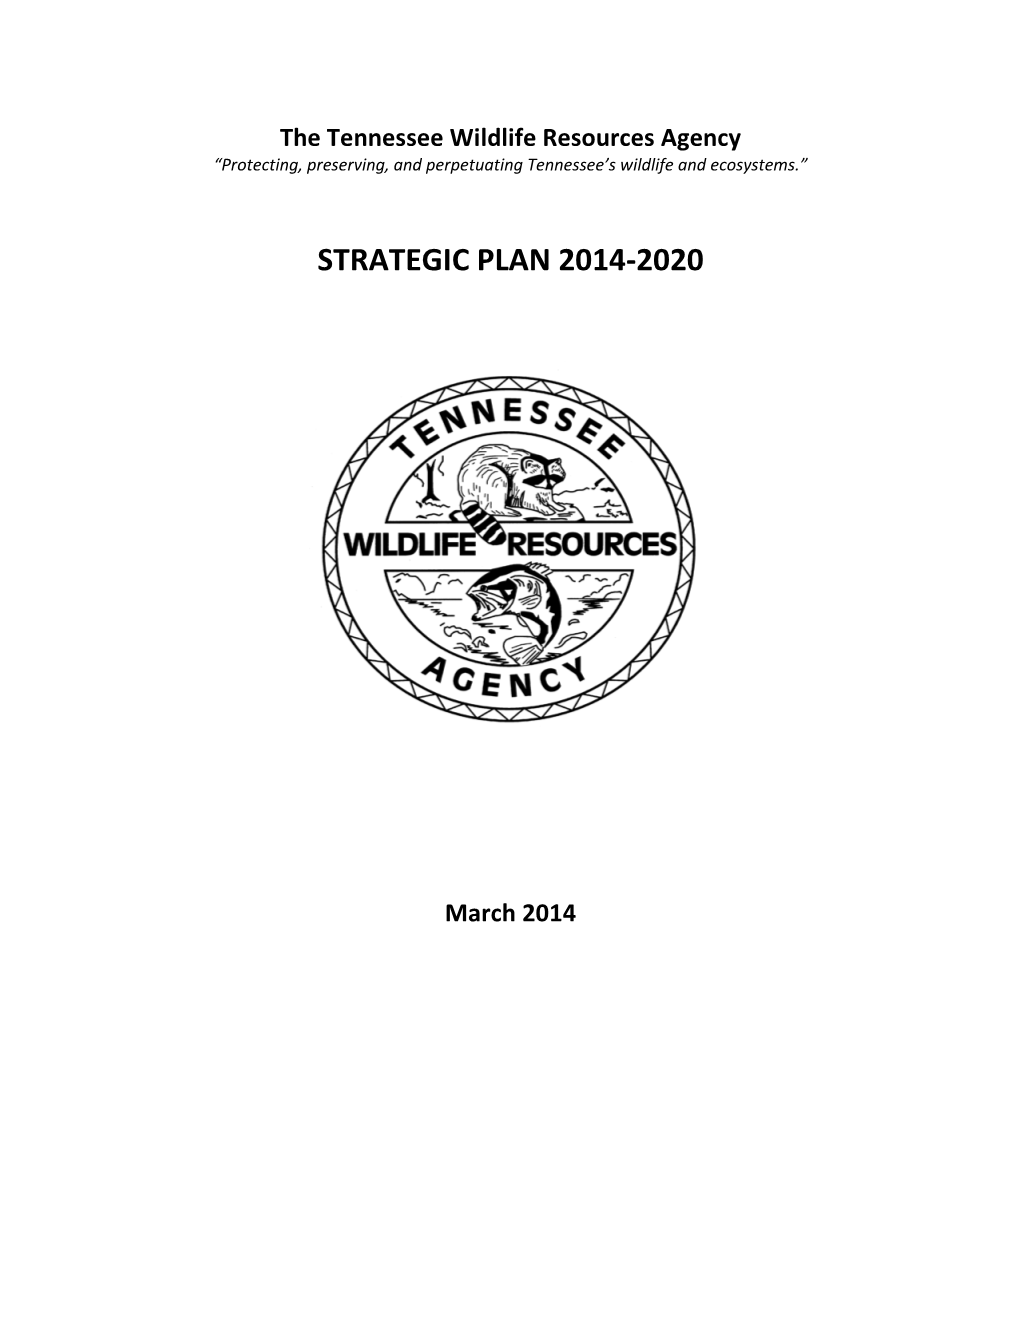 TWRA Strategic Plan (2014-2020)